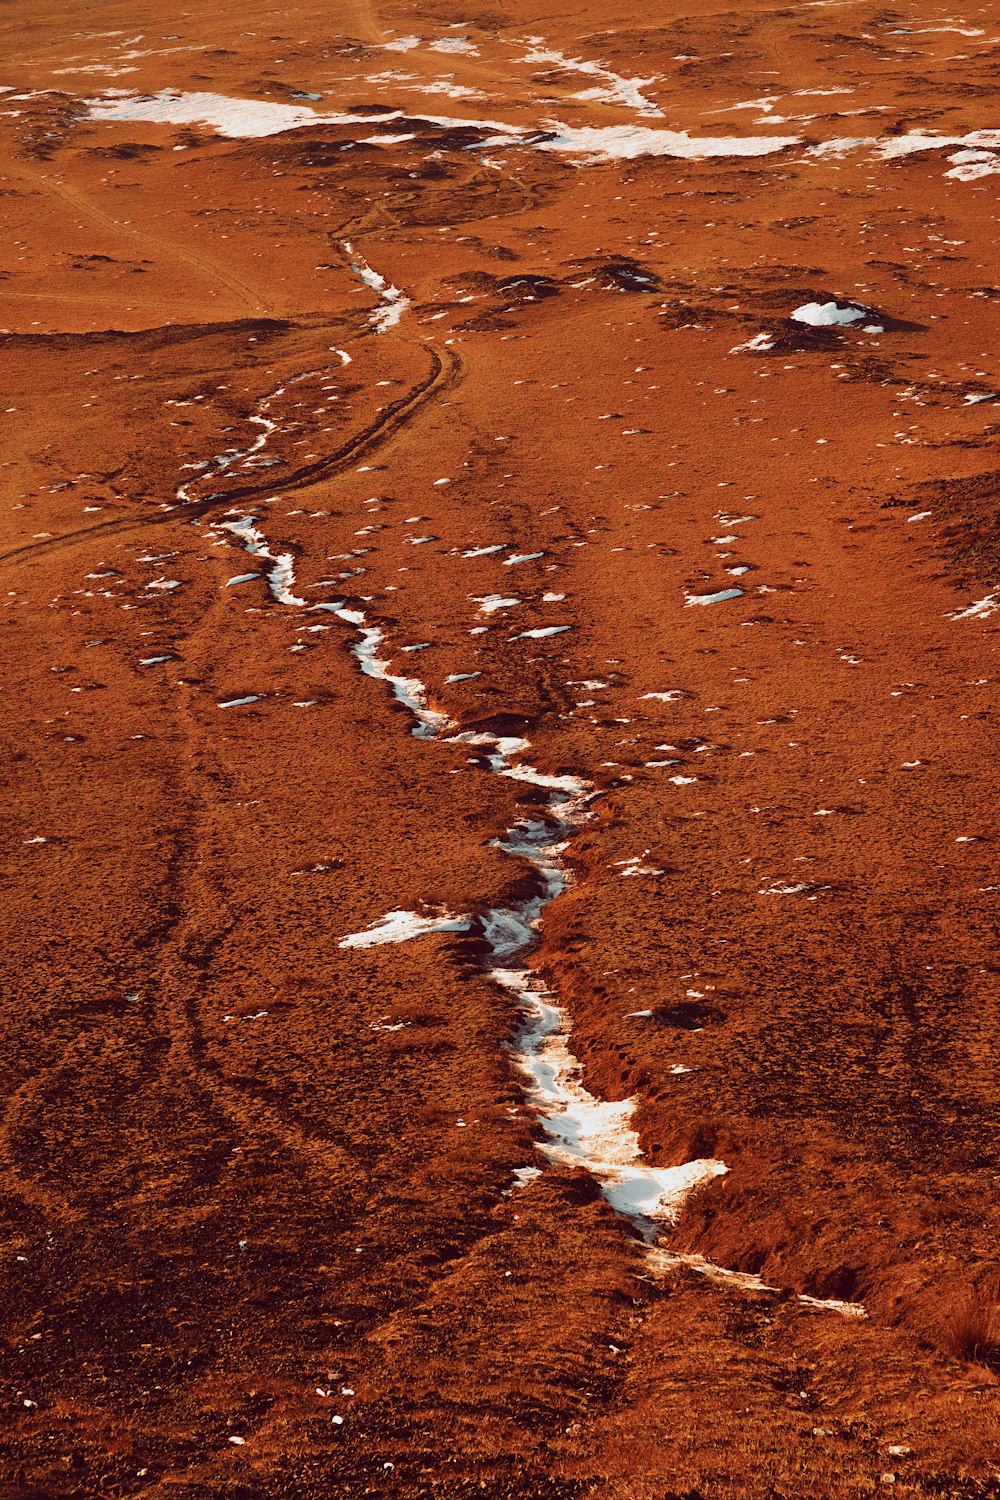 a stream of water running through a barren landscape